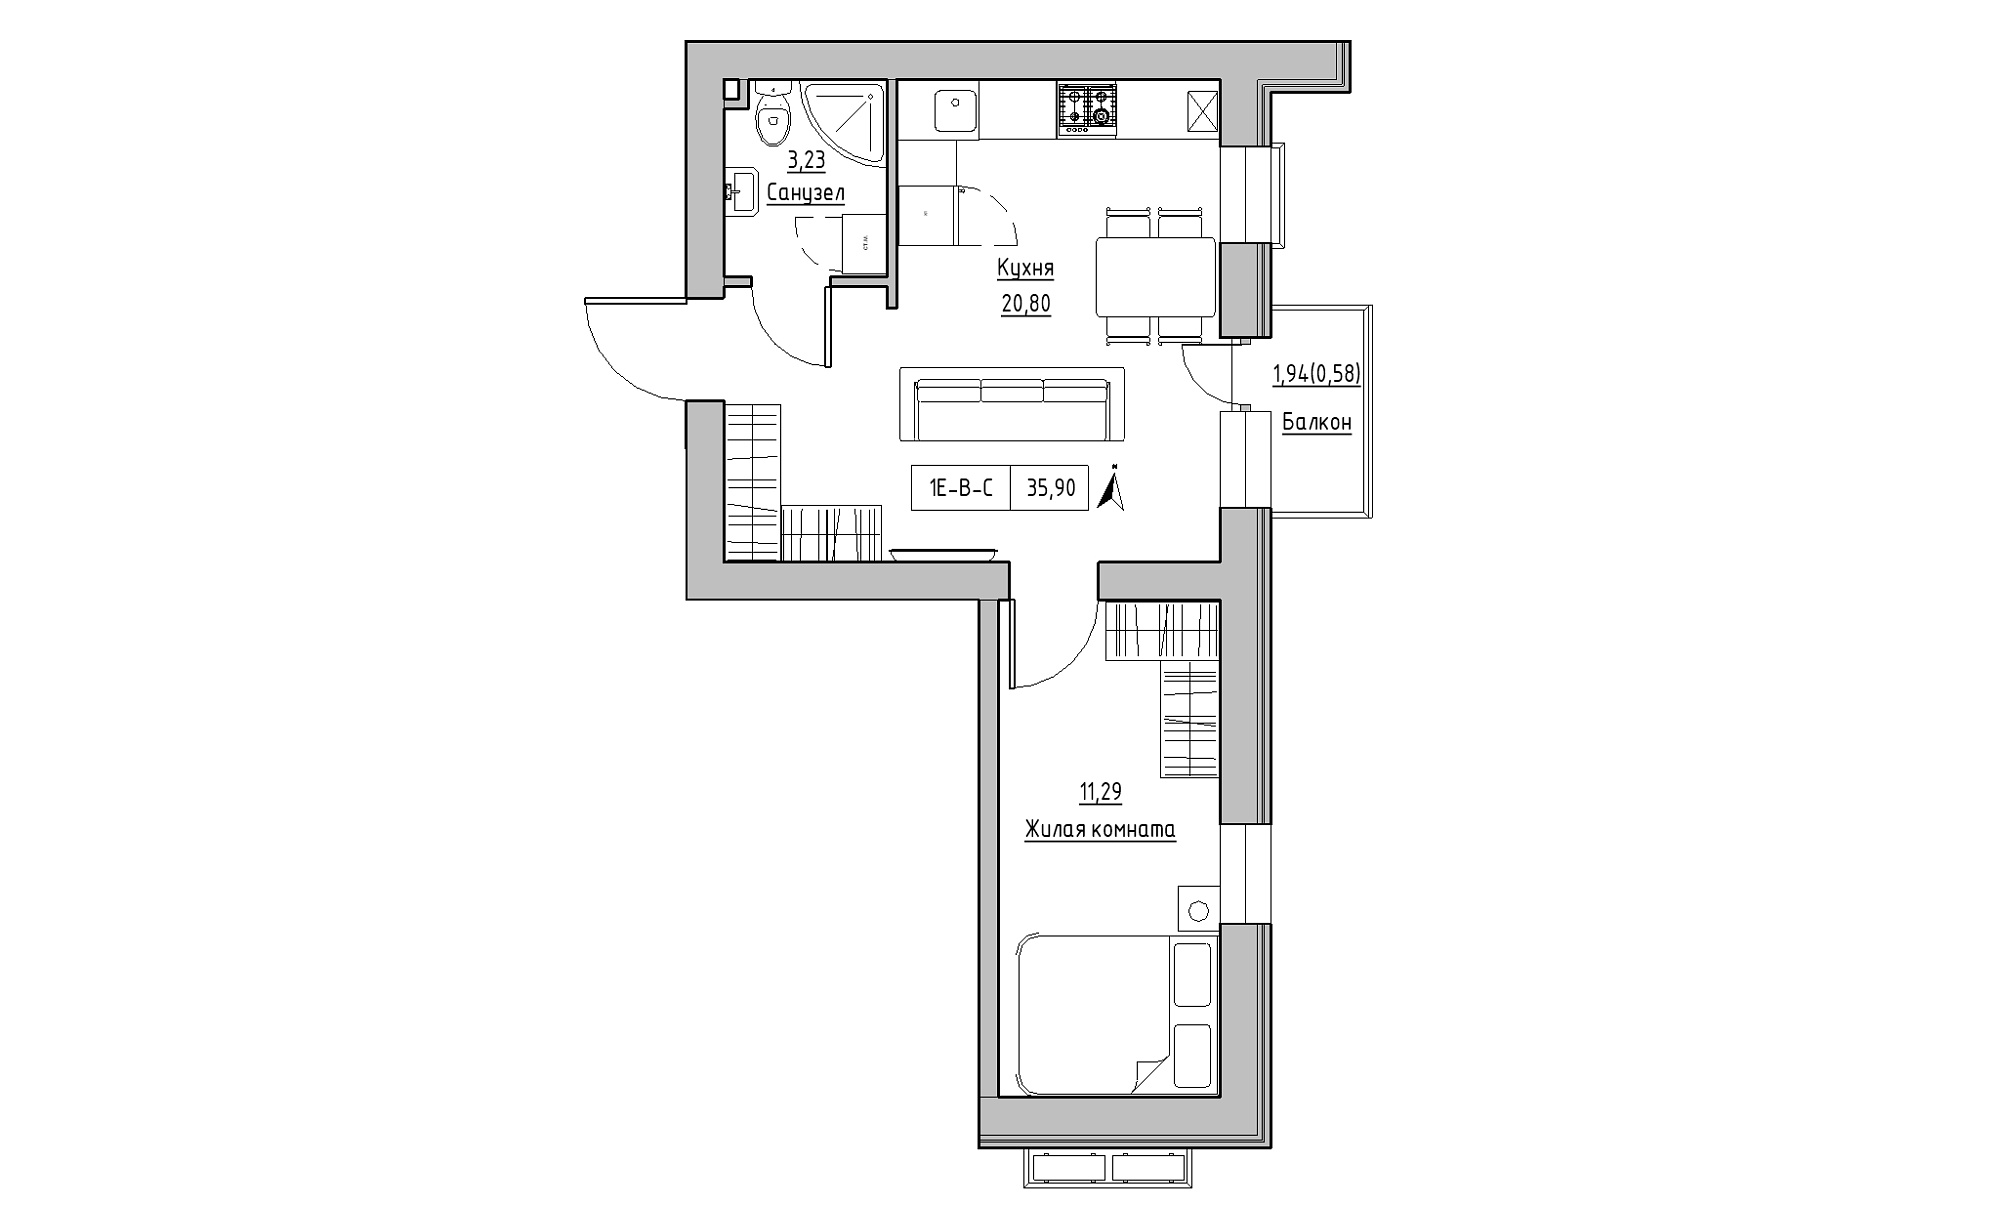 Планування 1-к квартира площею 35.9м2, KS-023-04/0008.